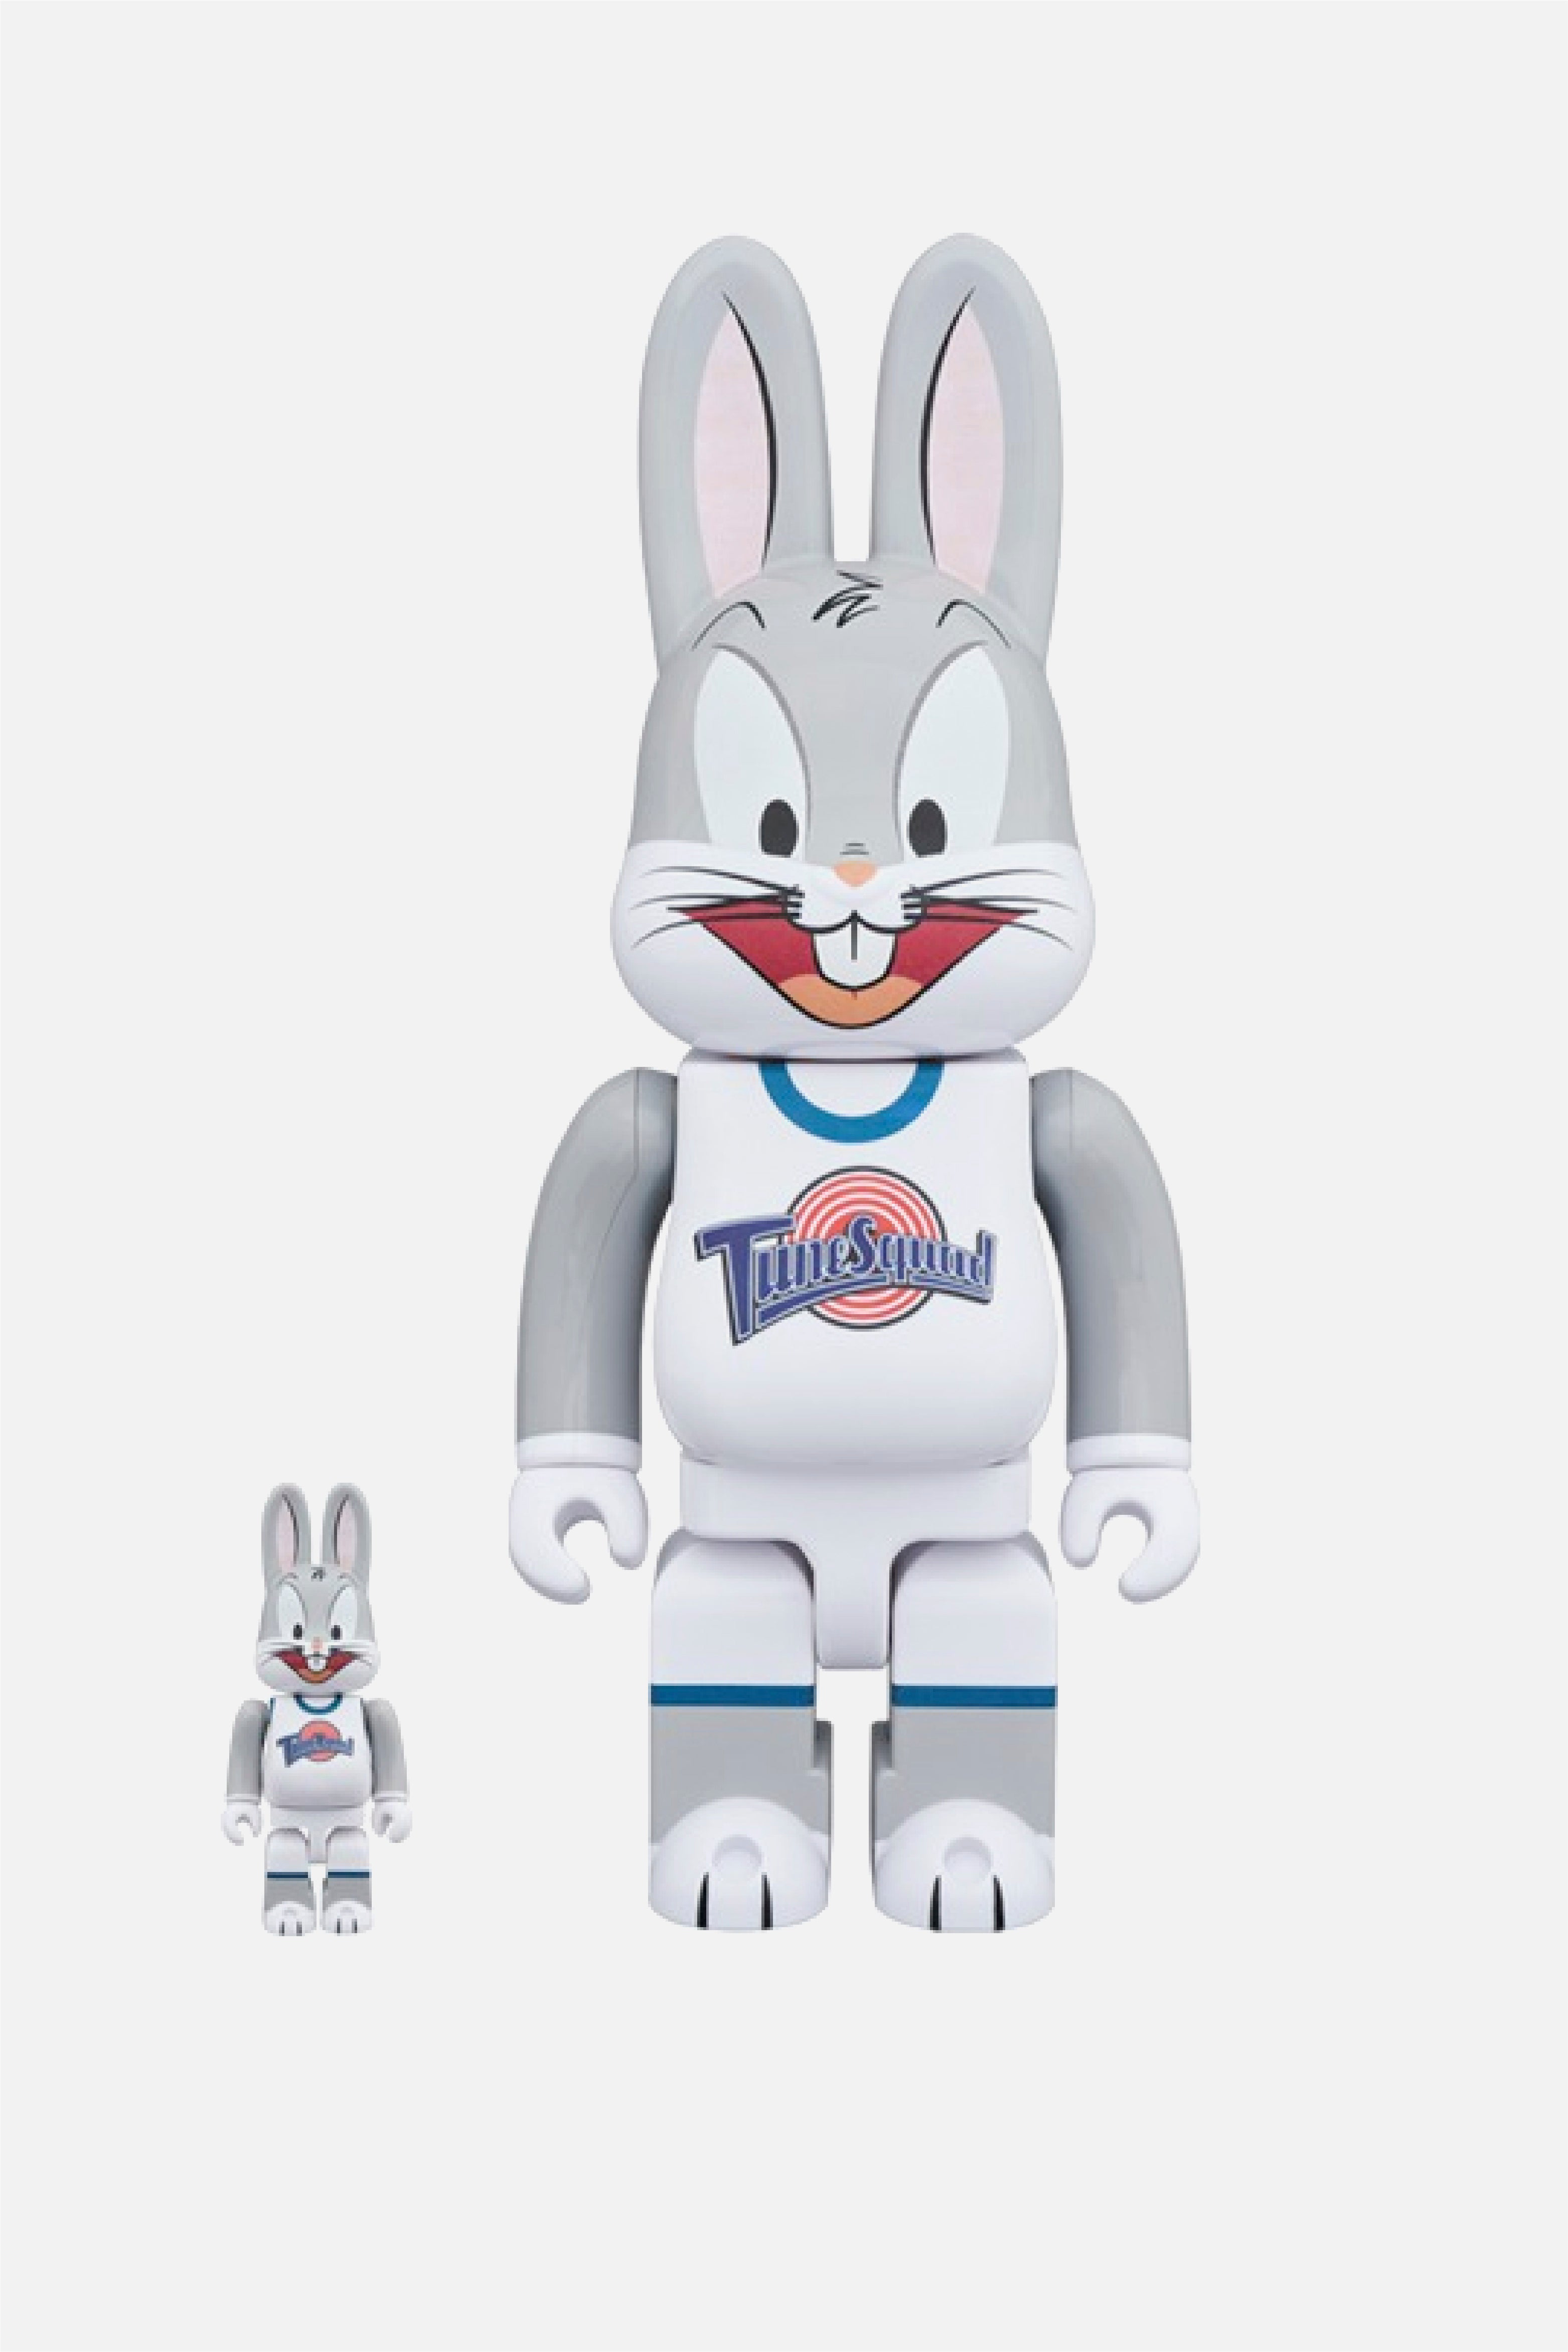 Selectshop FRAME - MEDICOM TOY R@bbrick Bugs Bunny 400%+100% Collectibles Dubai